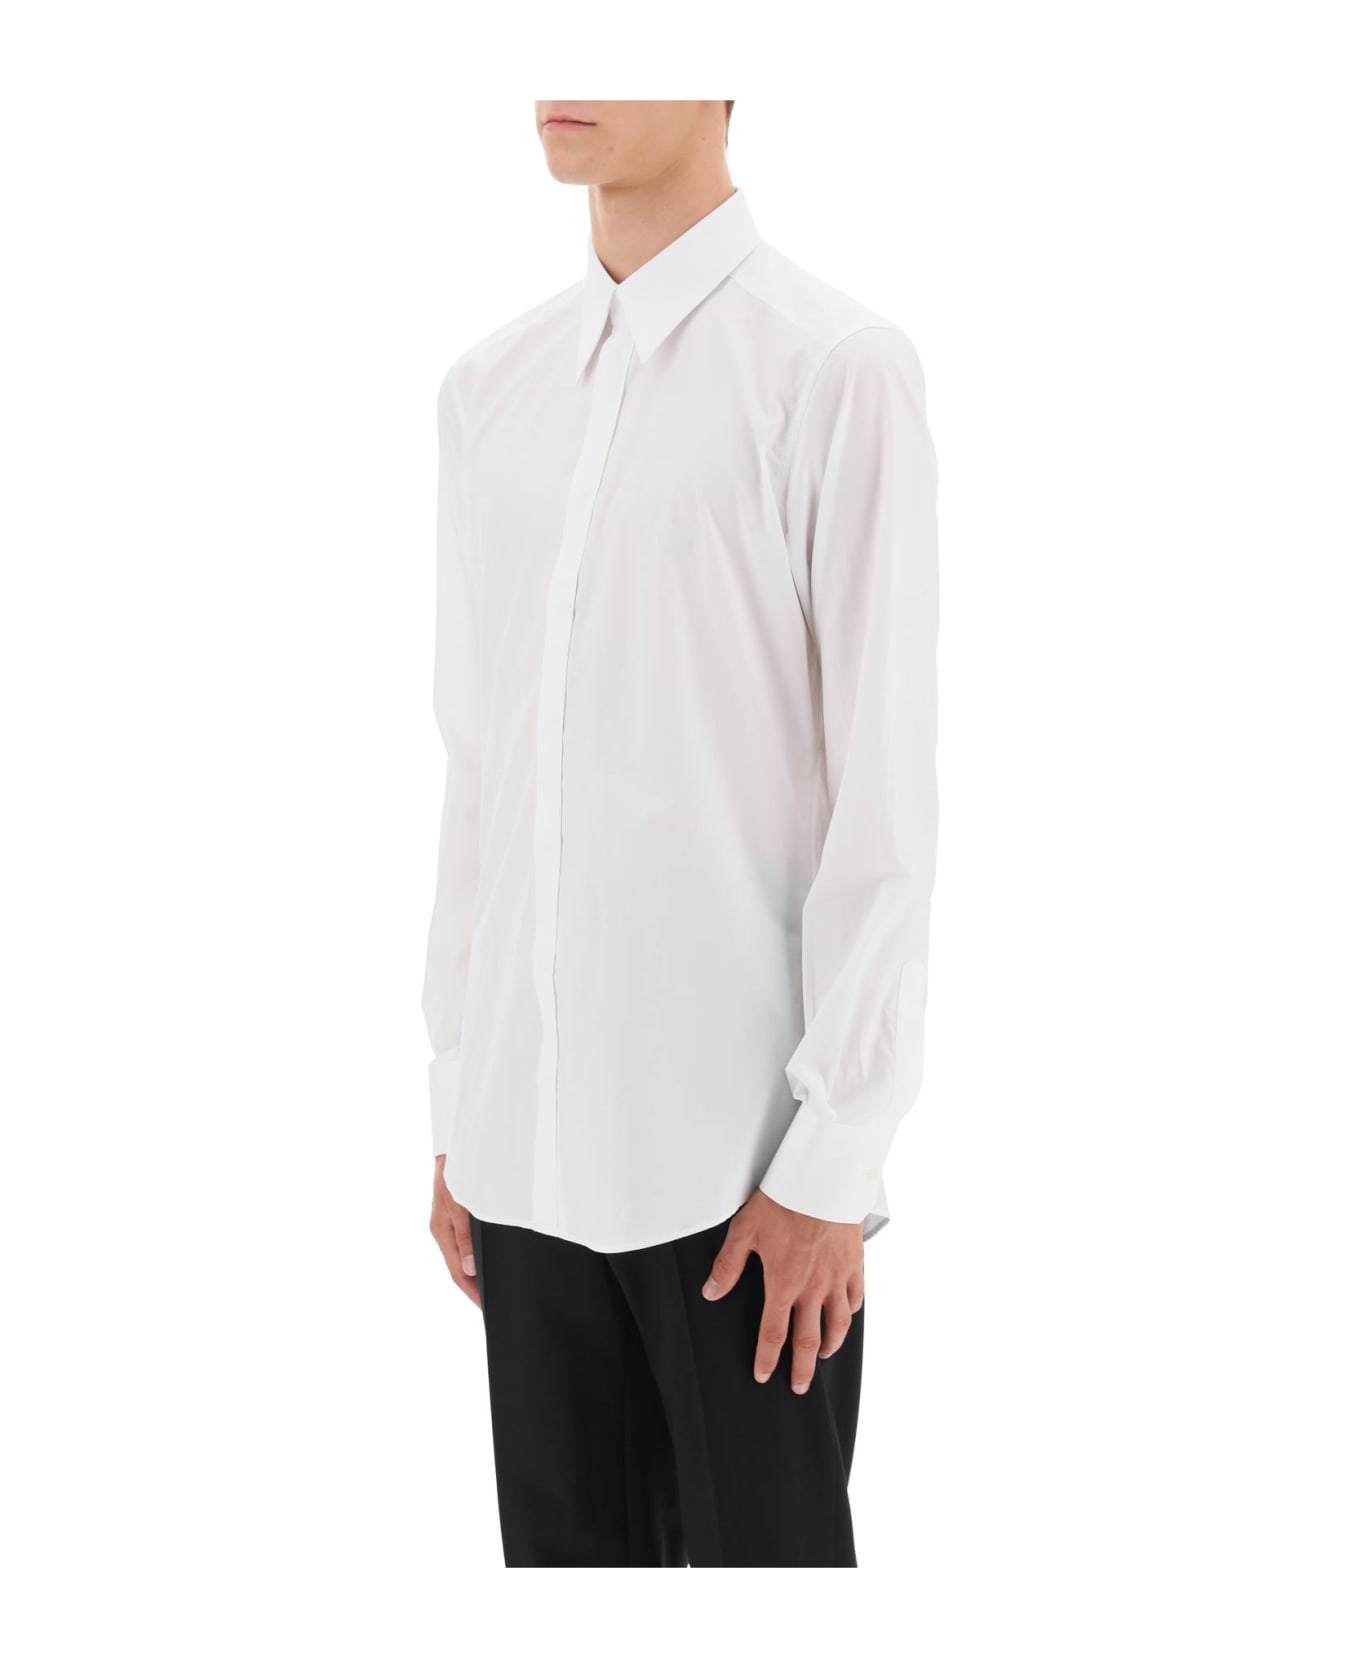 Dolce & Gabbana Martini Shirt - White シャツ